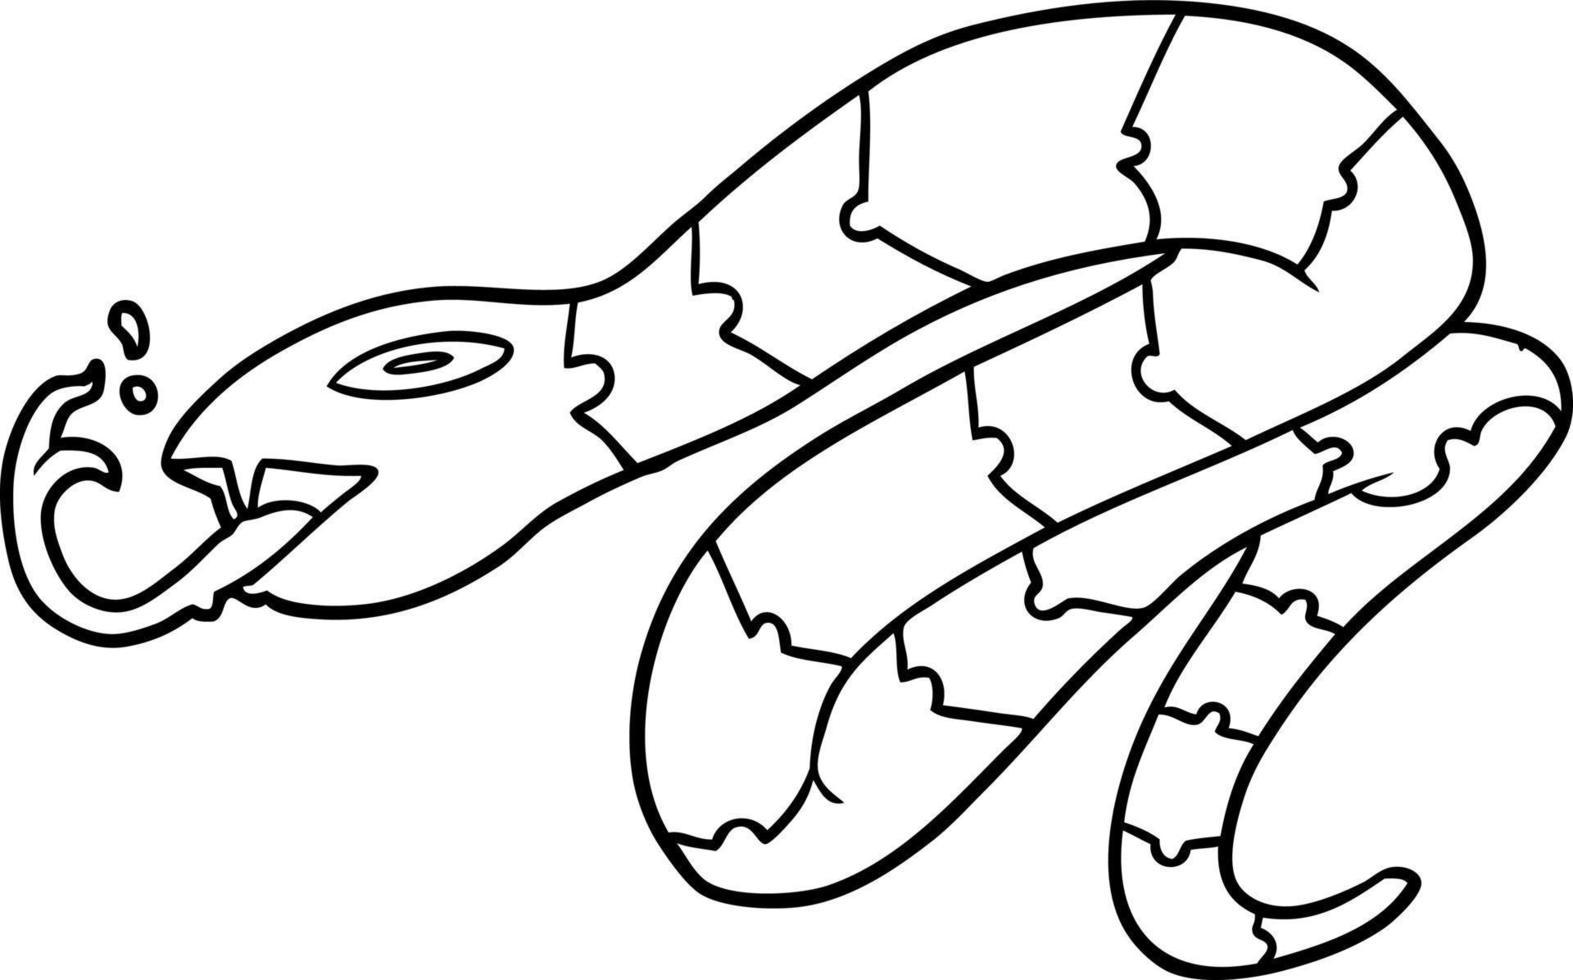 dibujo lineal de una serpiente sibilante vector